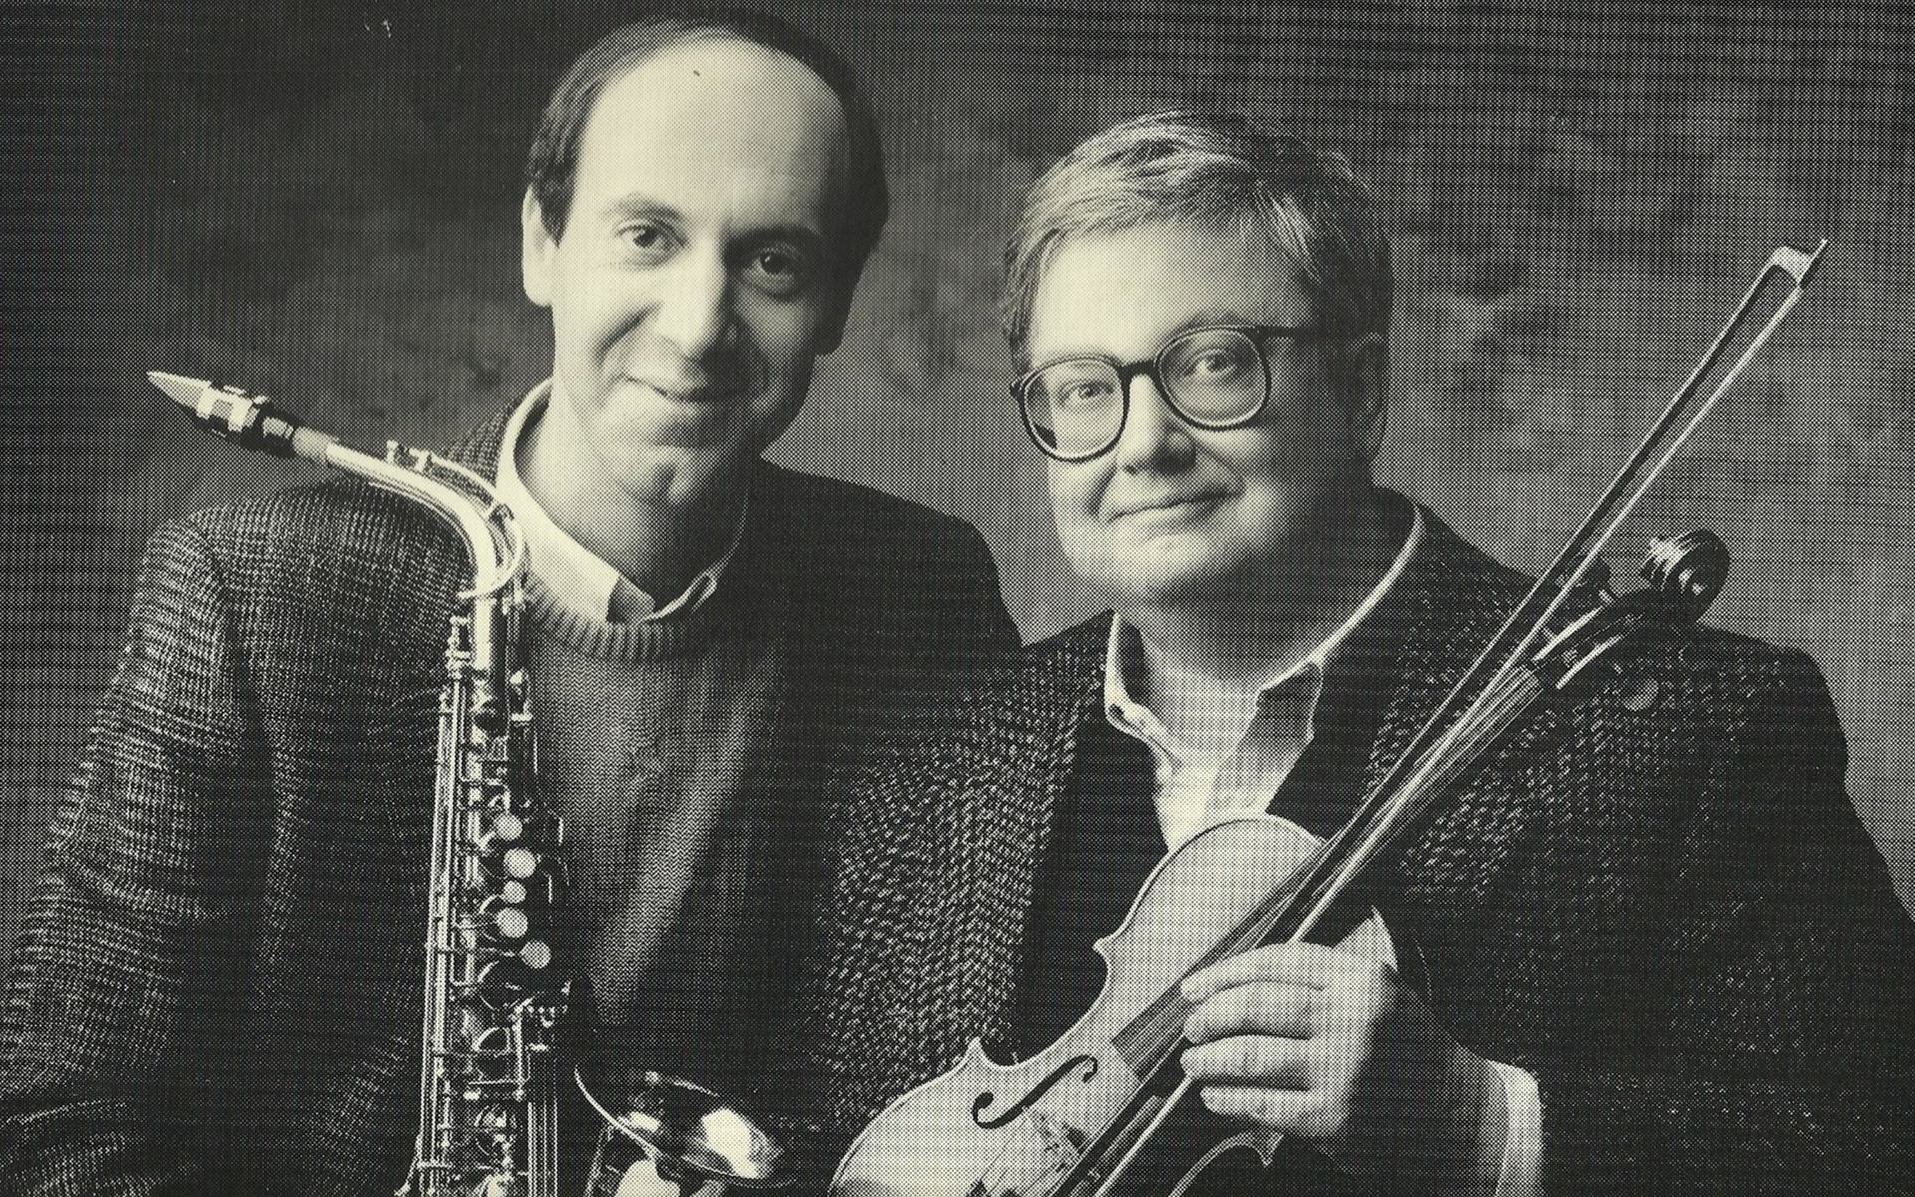 Siskel & Ebert [1986-2010]